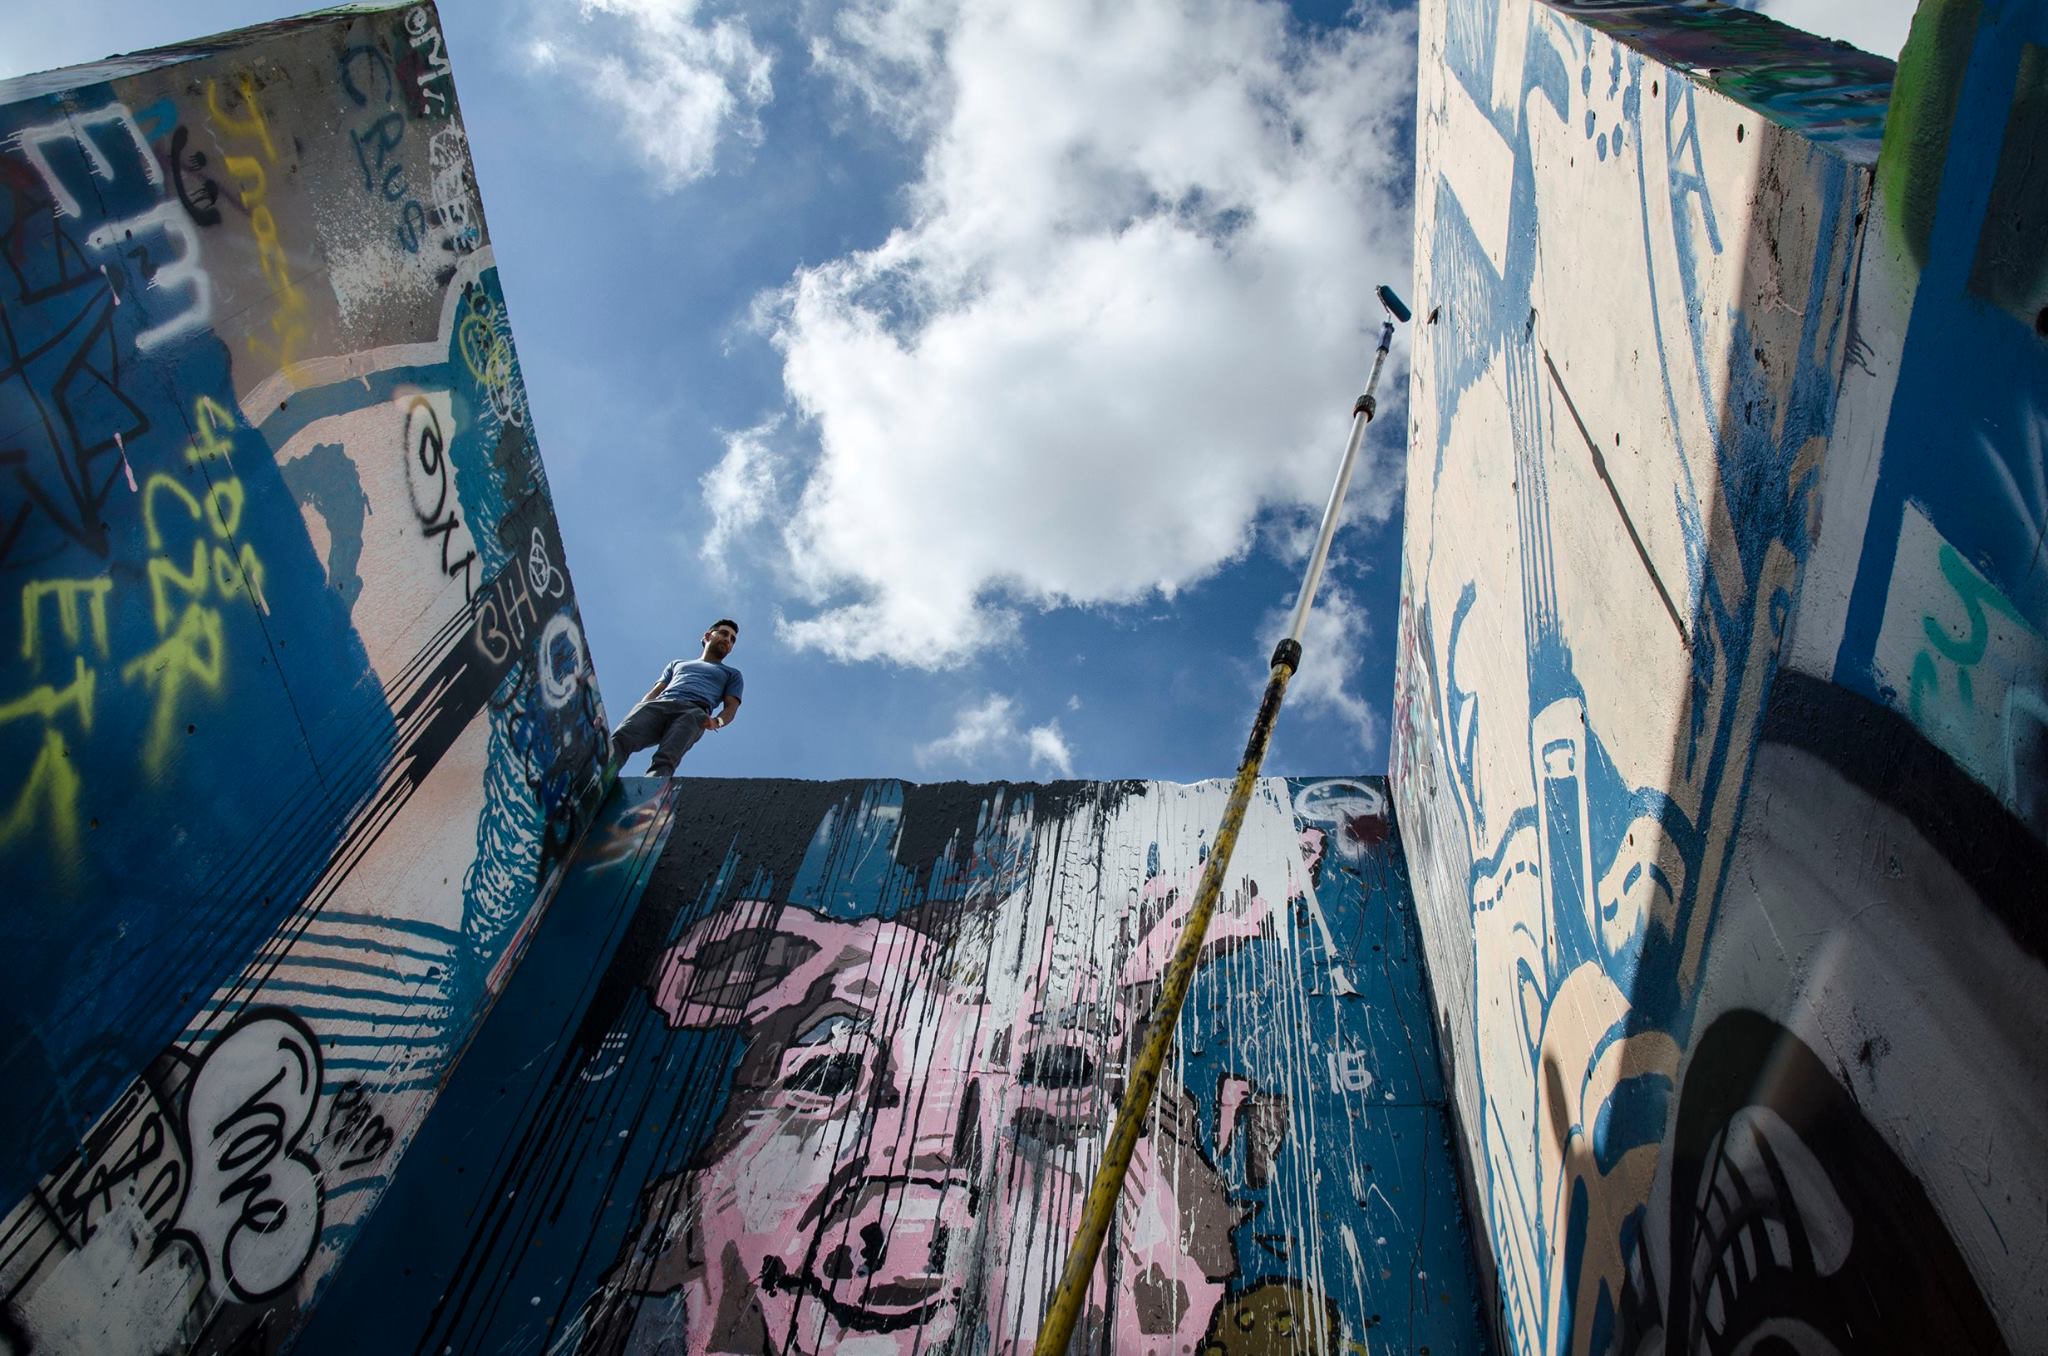   Graffiti wall in Austin, Texas  